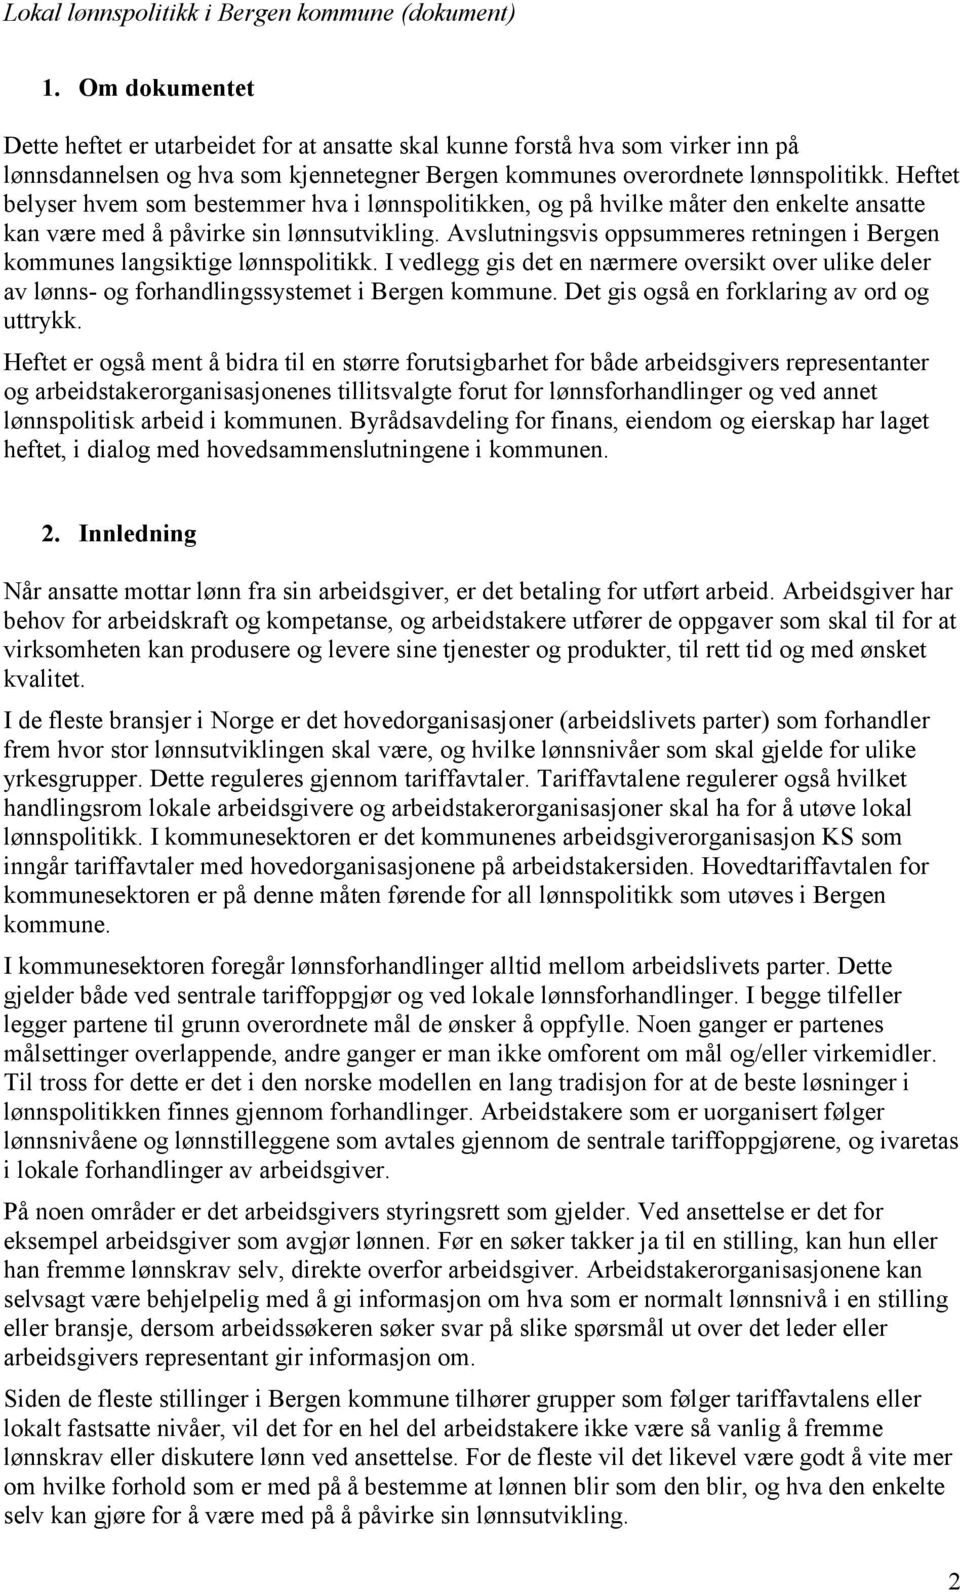 Avslutningsvis oppsummeres retningen i Bergen kommunes langsiktige lønnspolitikk. I vedlegg gis det en nærmere oversikt over ulike deler av lønns- og forhandlingssystemet i Bergen kommune.